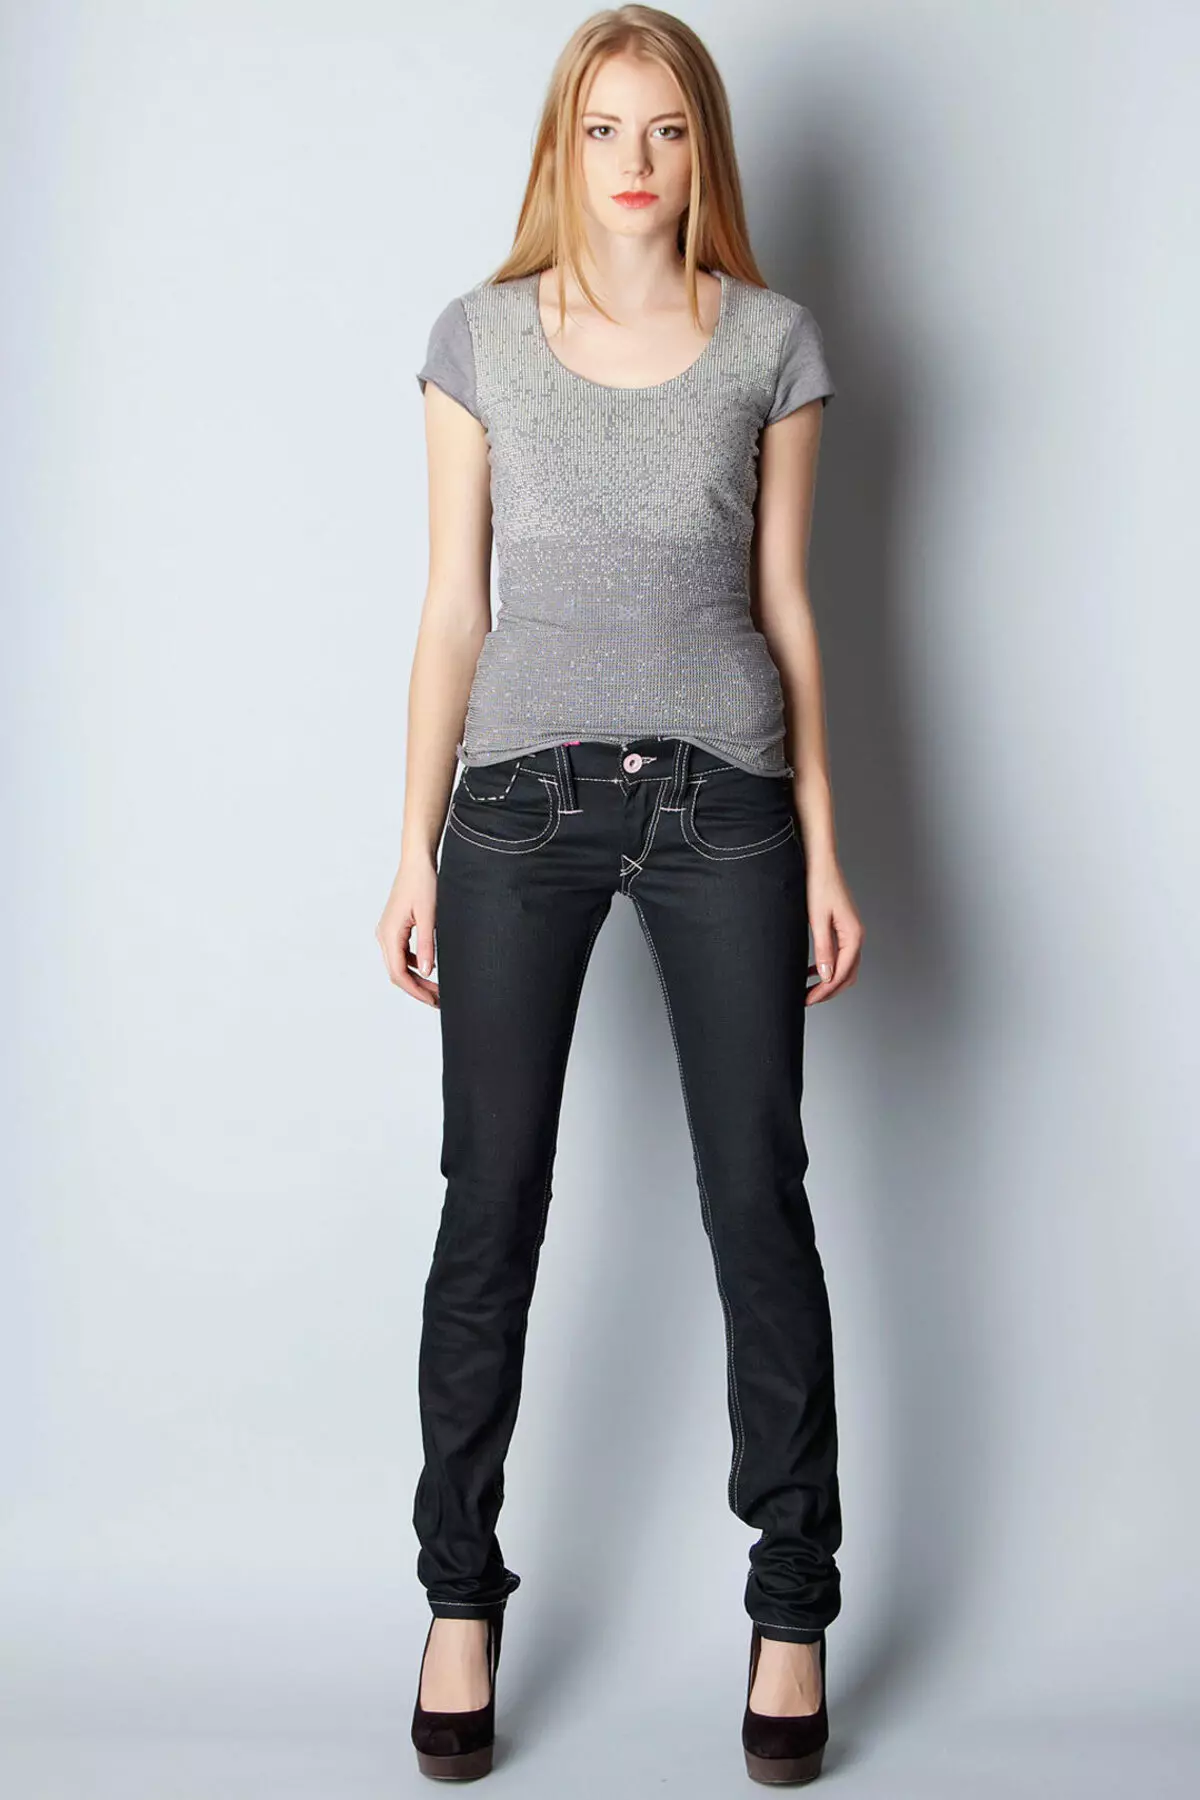 ג 'ינס שחור: מה ללבוש, צמצמו מודלים הדוקים 1118_4